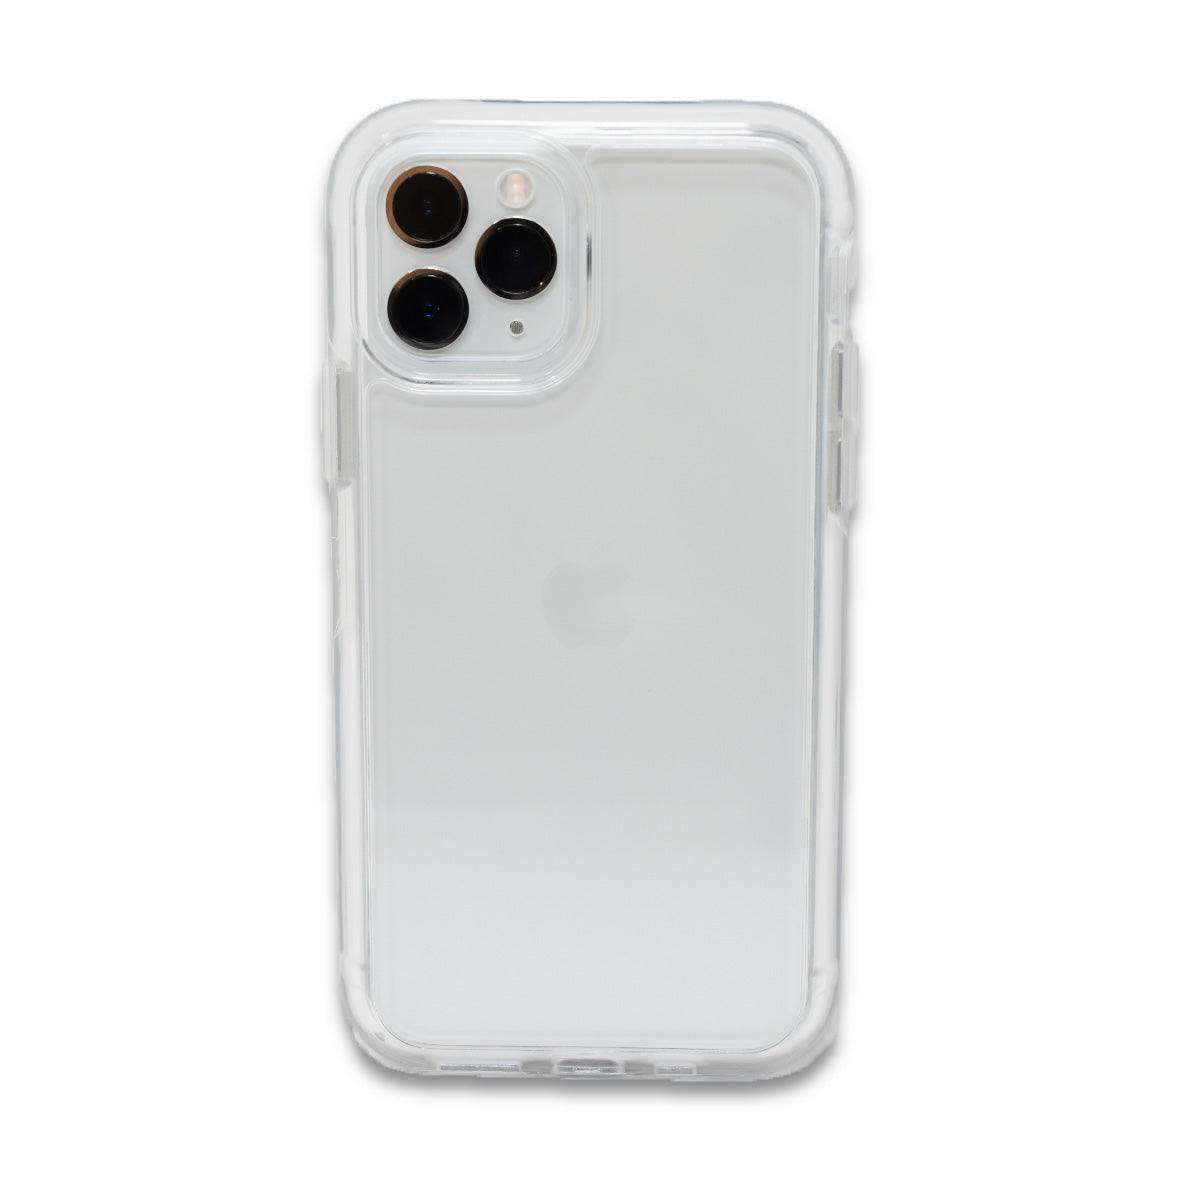 Funda iPhone 11 Transparente 2 en 1 Acrigel Silicon y Acrilico